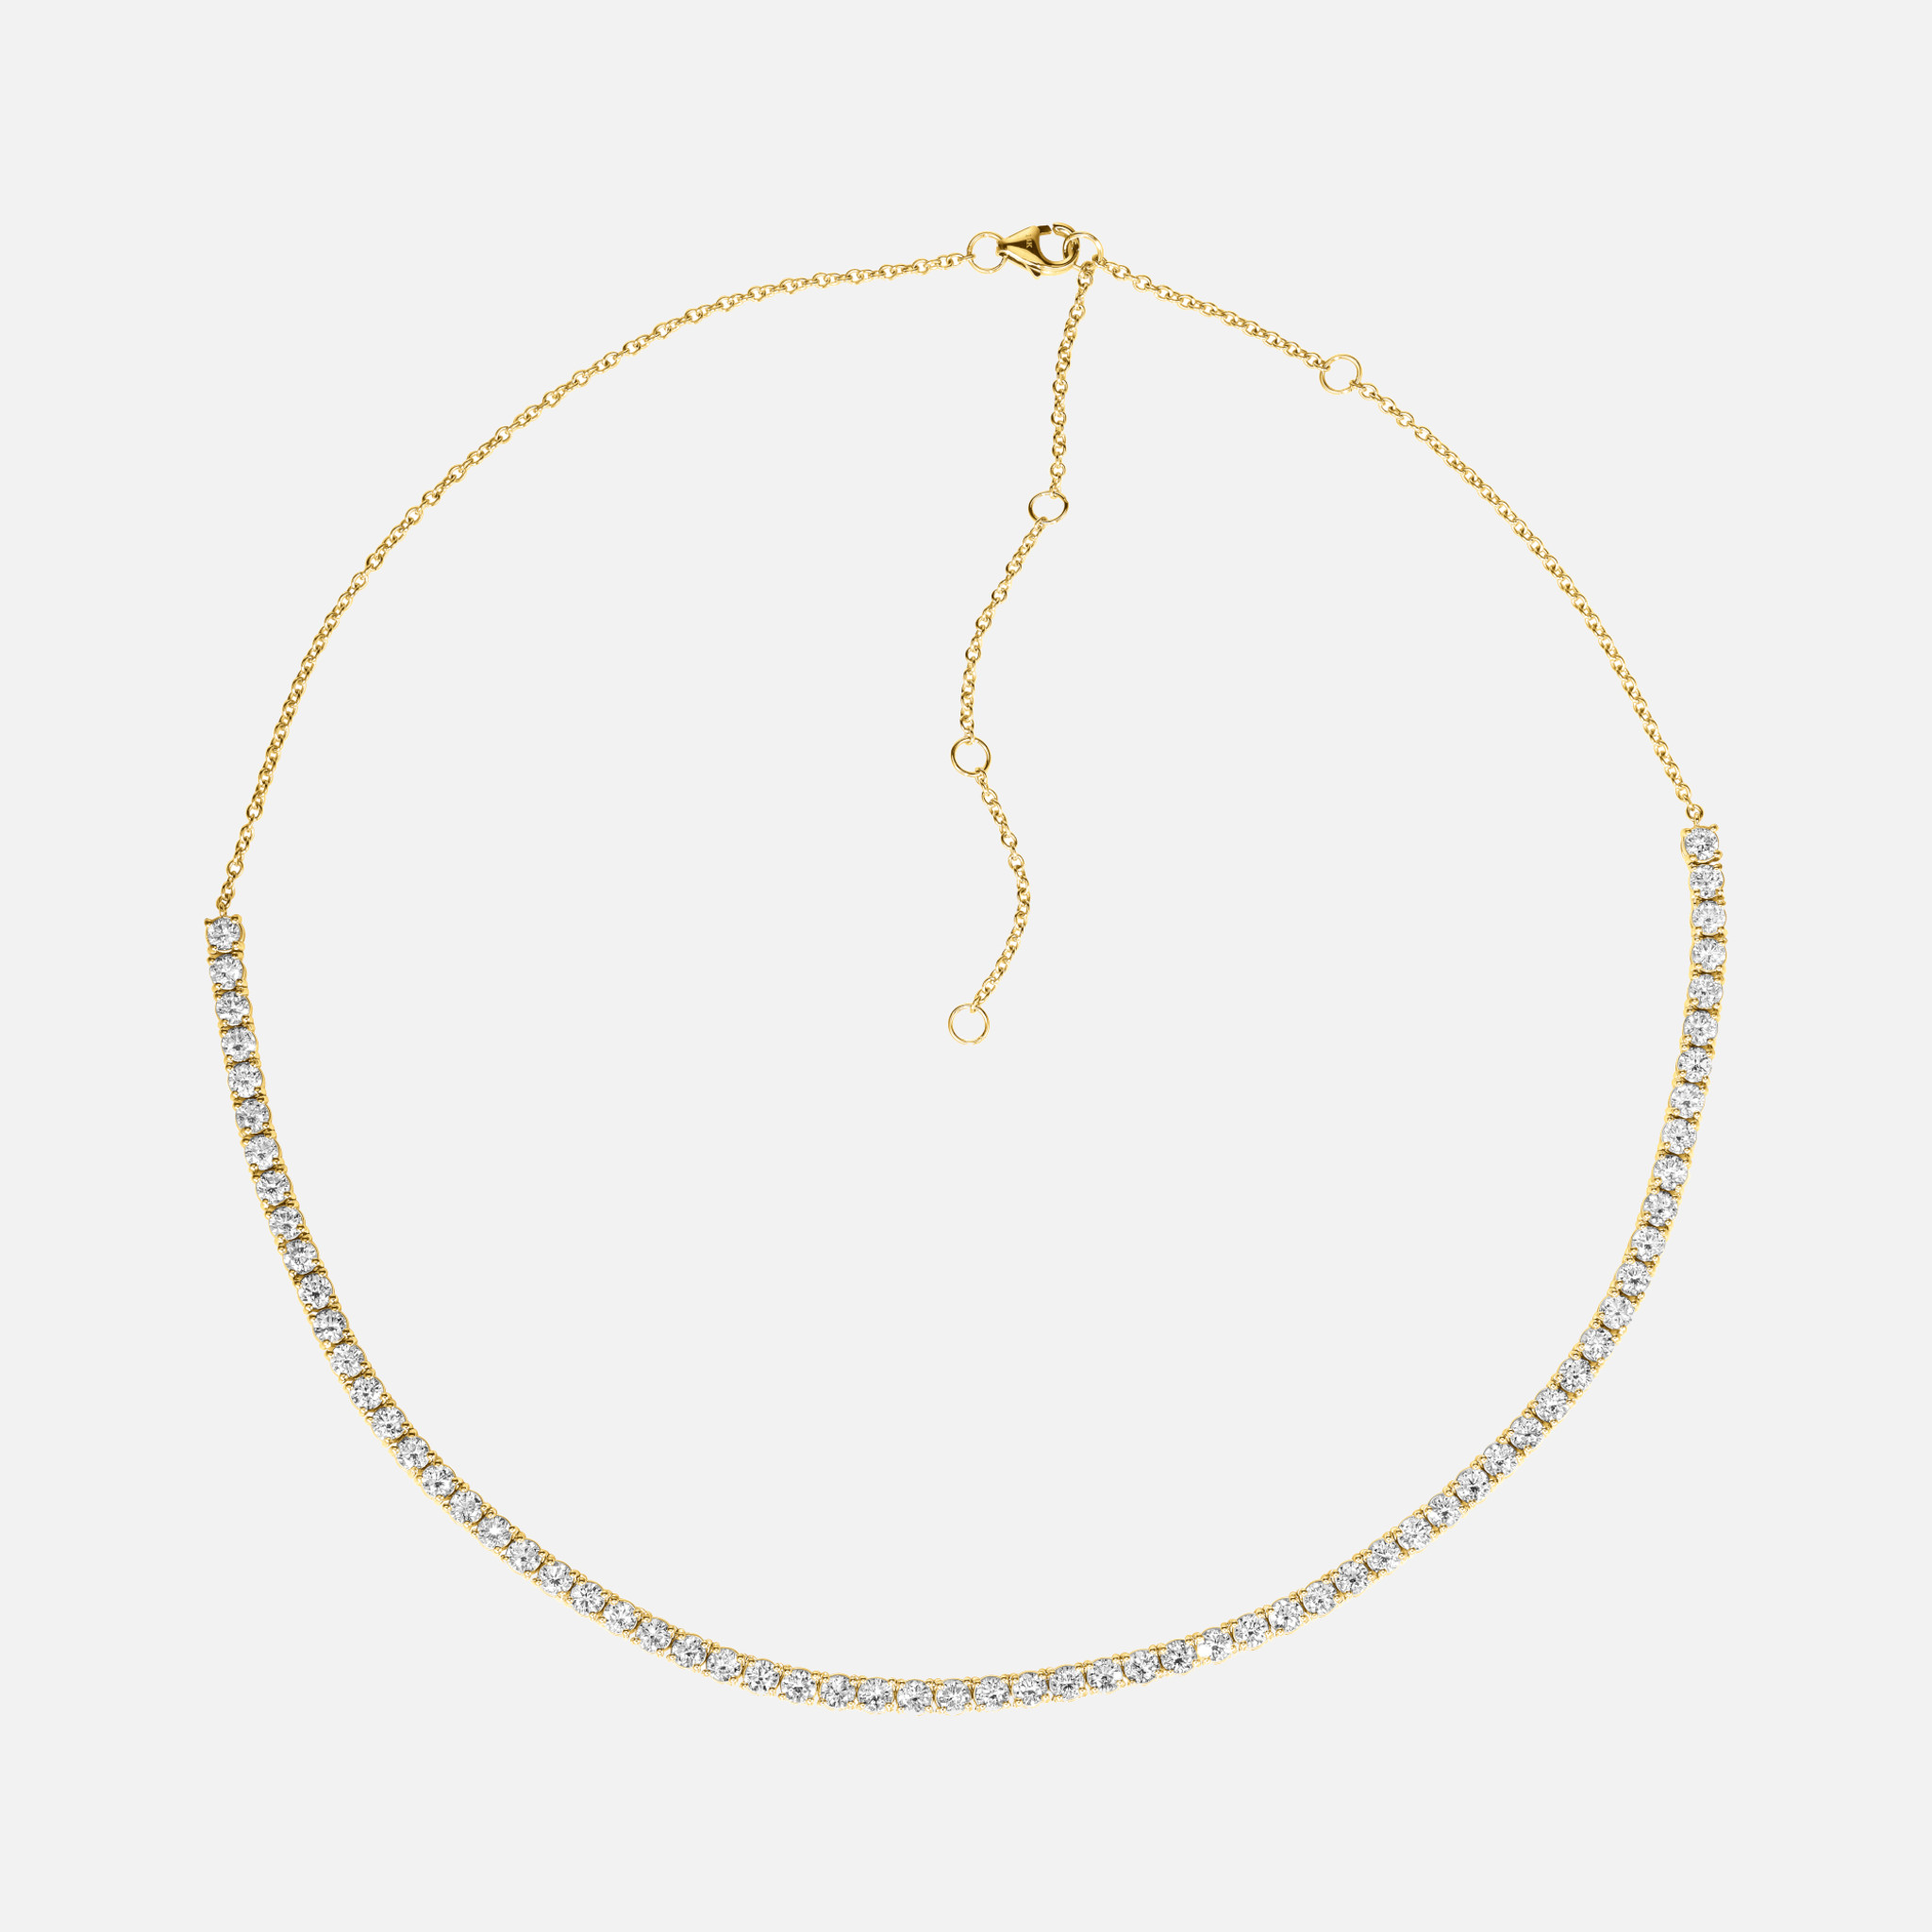 Impresionante collar tenis de diamantes en elegante oro blanco, con cadena de cable extensible y 0,92 quilates de diamantes blancos talla brillante.